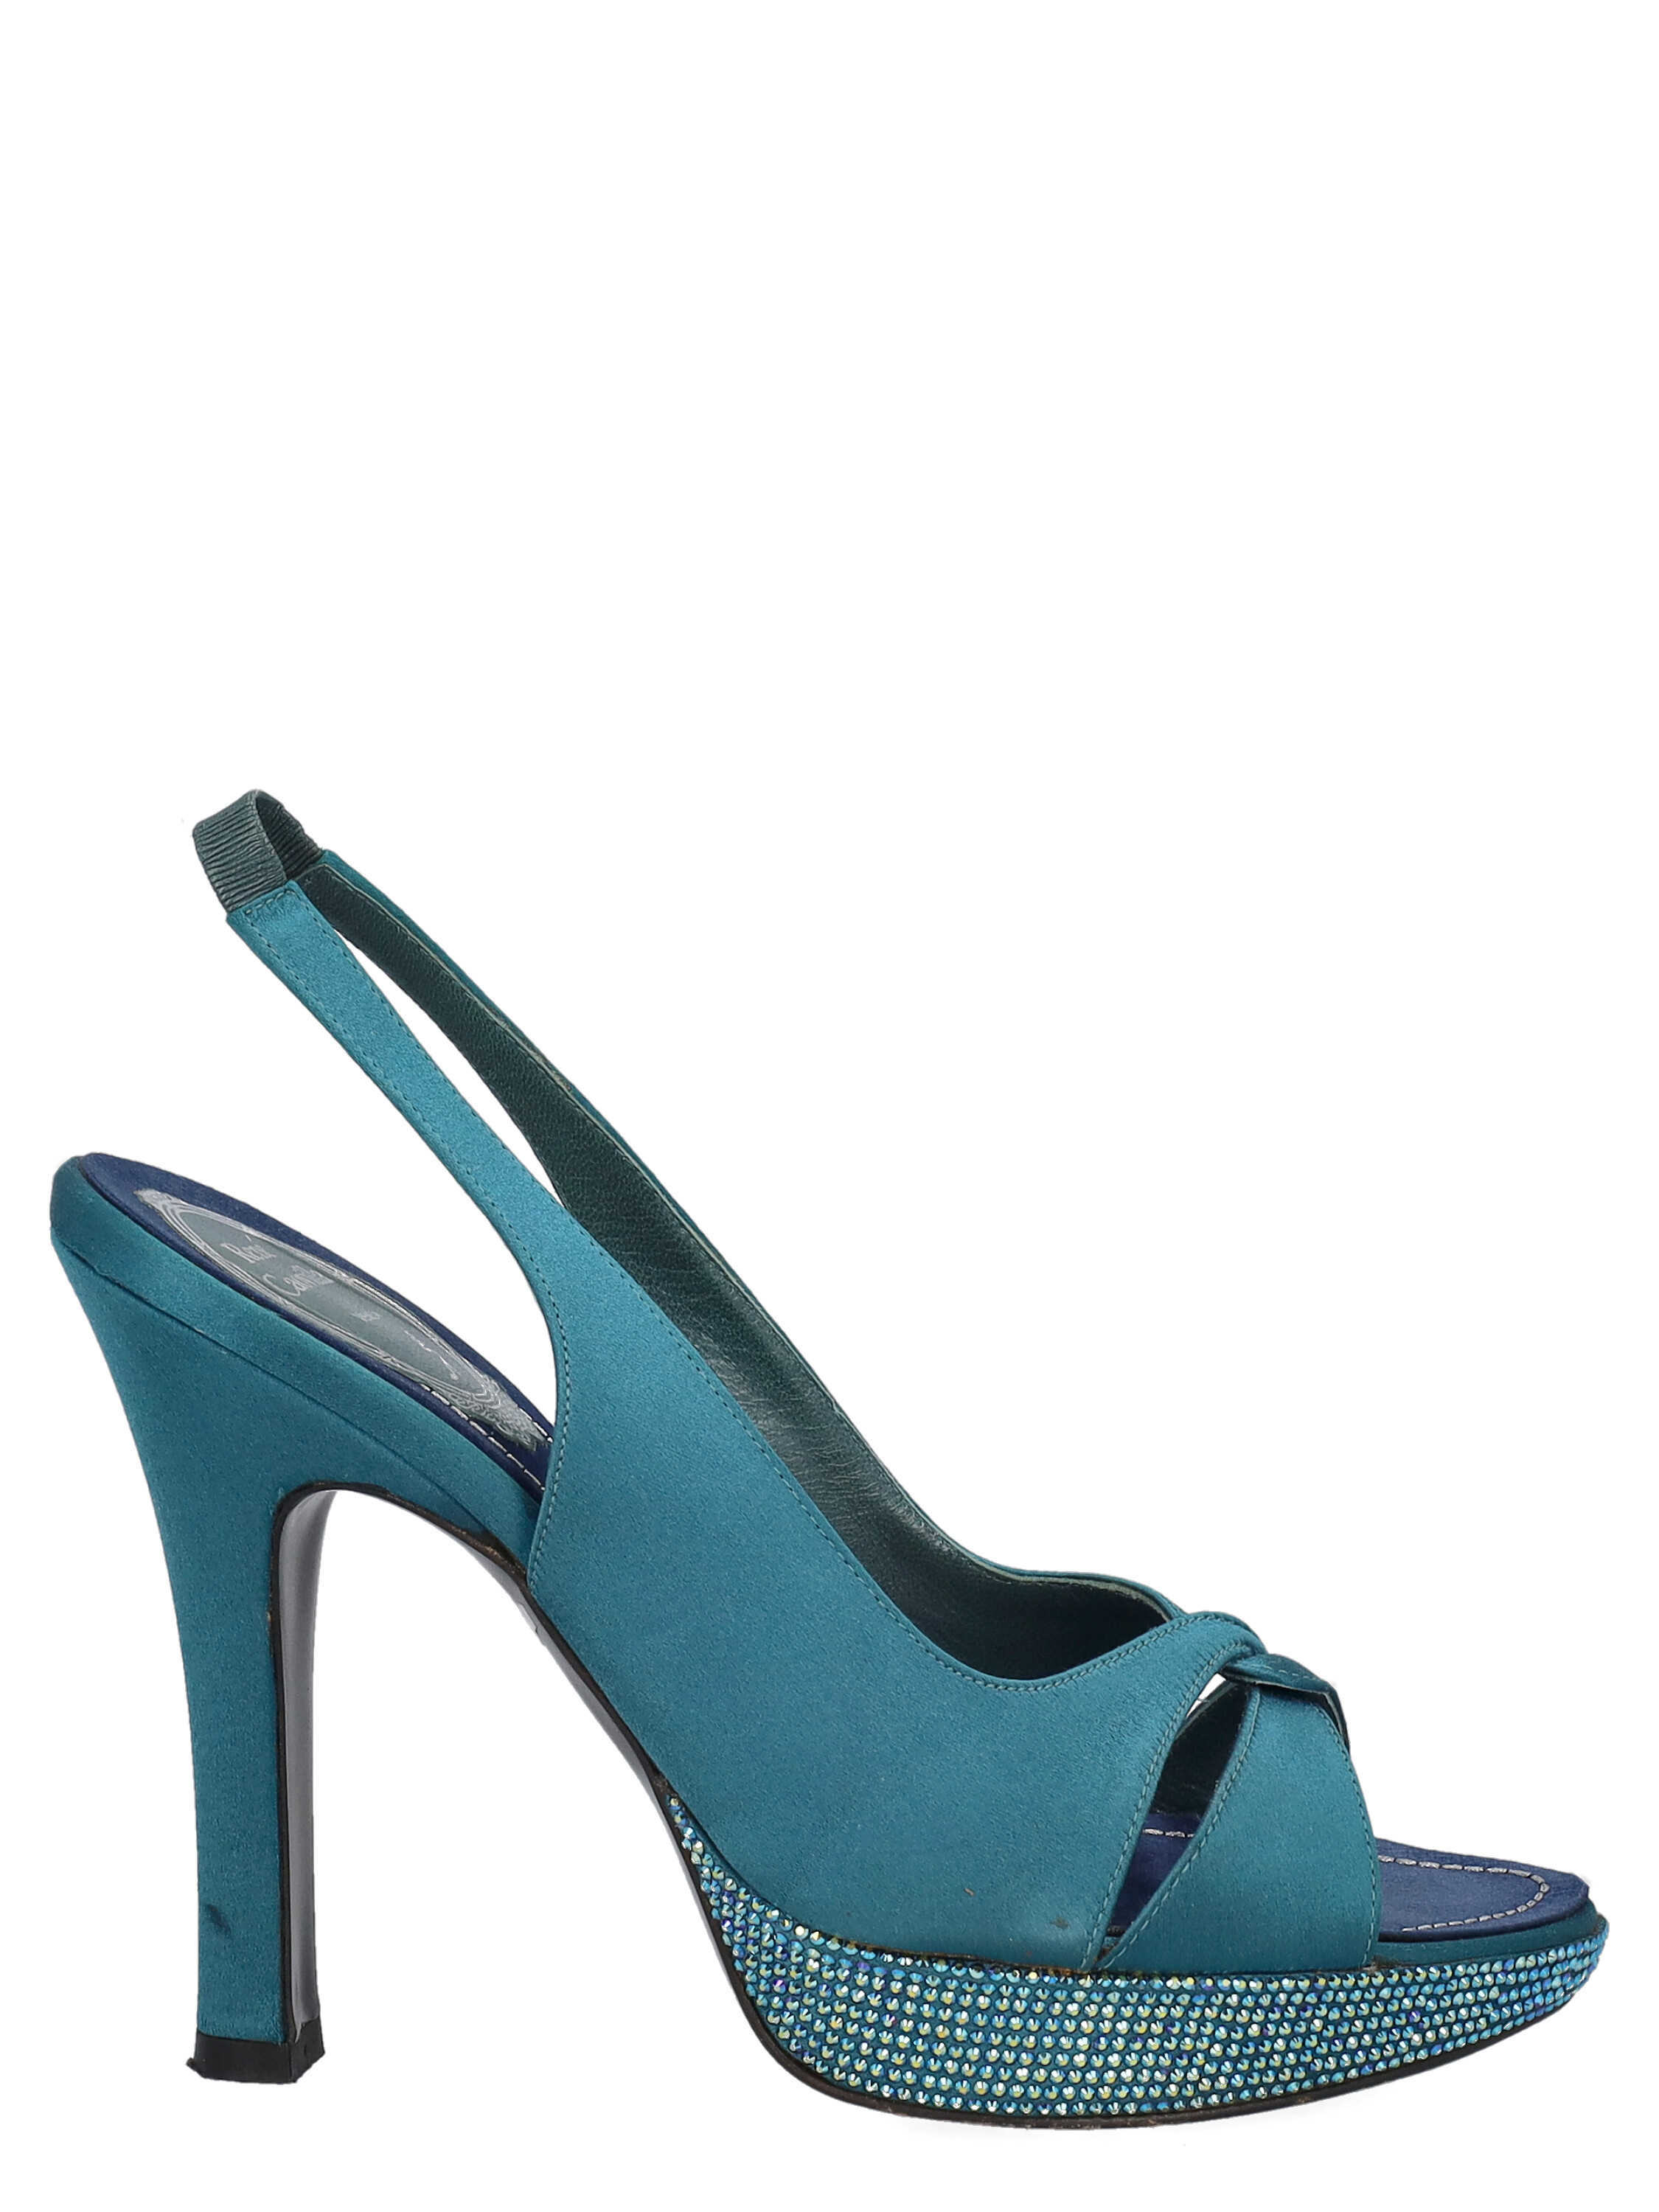 Pre-owned René Caovilla Women's Sandals - Rene Caovilla - In Blue It 37